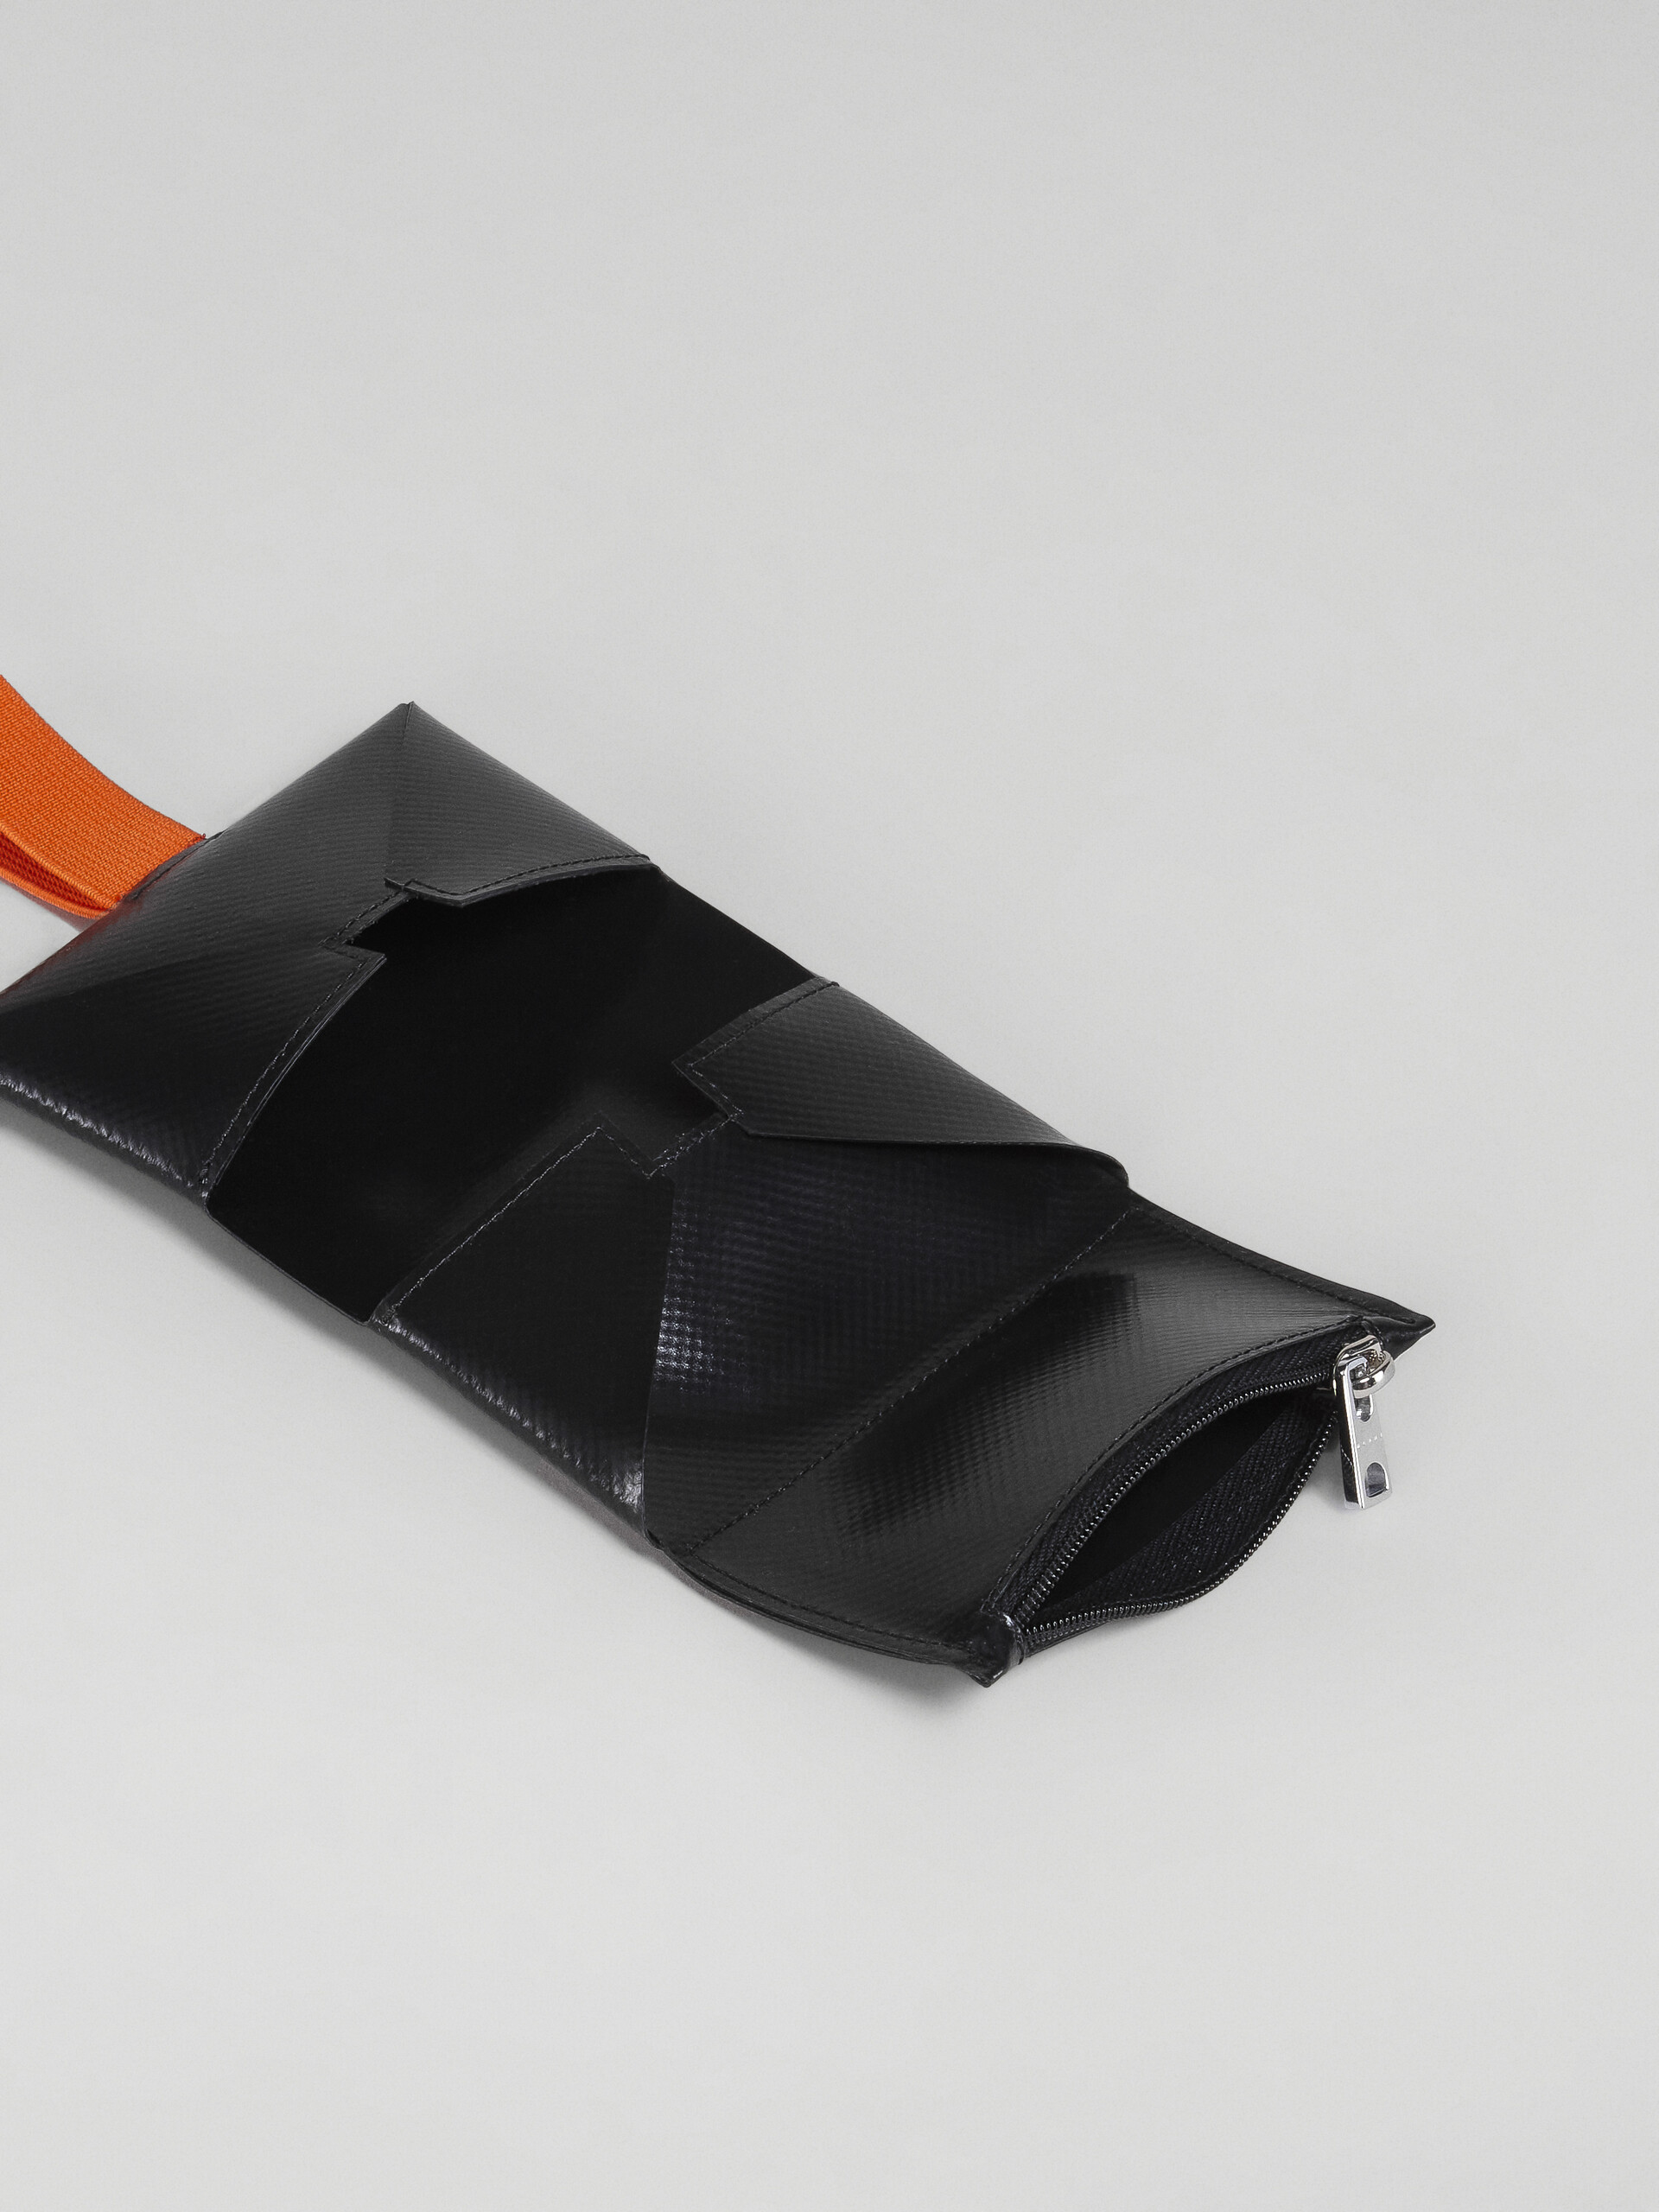 Portafoglio origami nero e arancio - Portafogli - Image 2